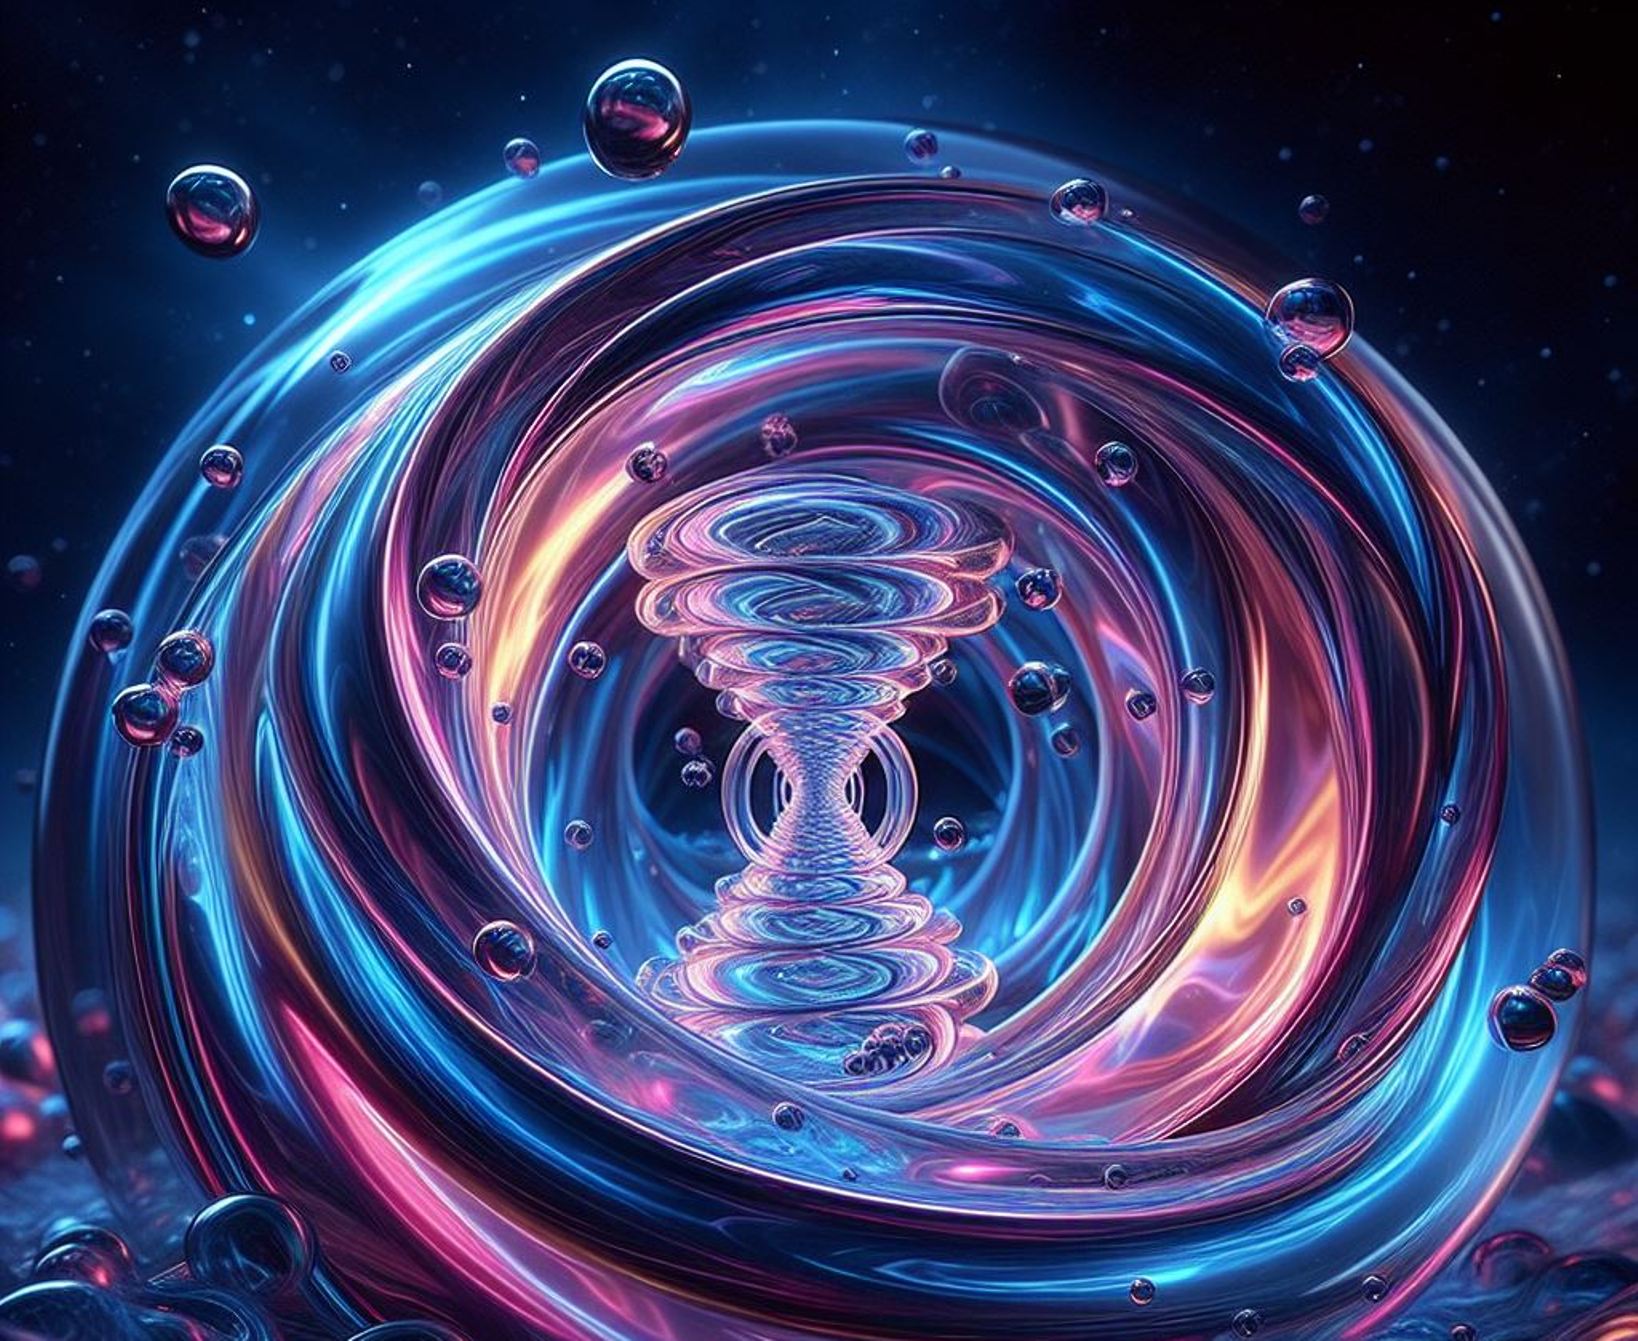 Une vue de l'IA d'un vortex quantique. © LS, IA BING Designer Microsoft Corporation    